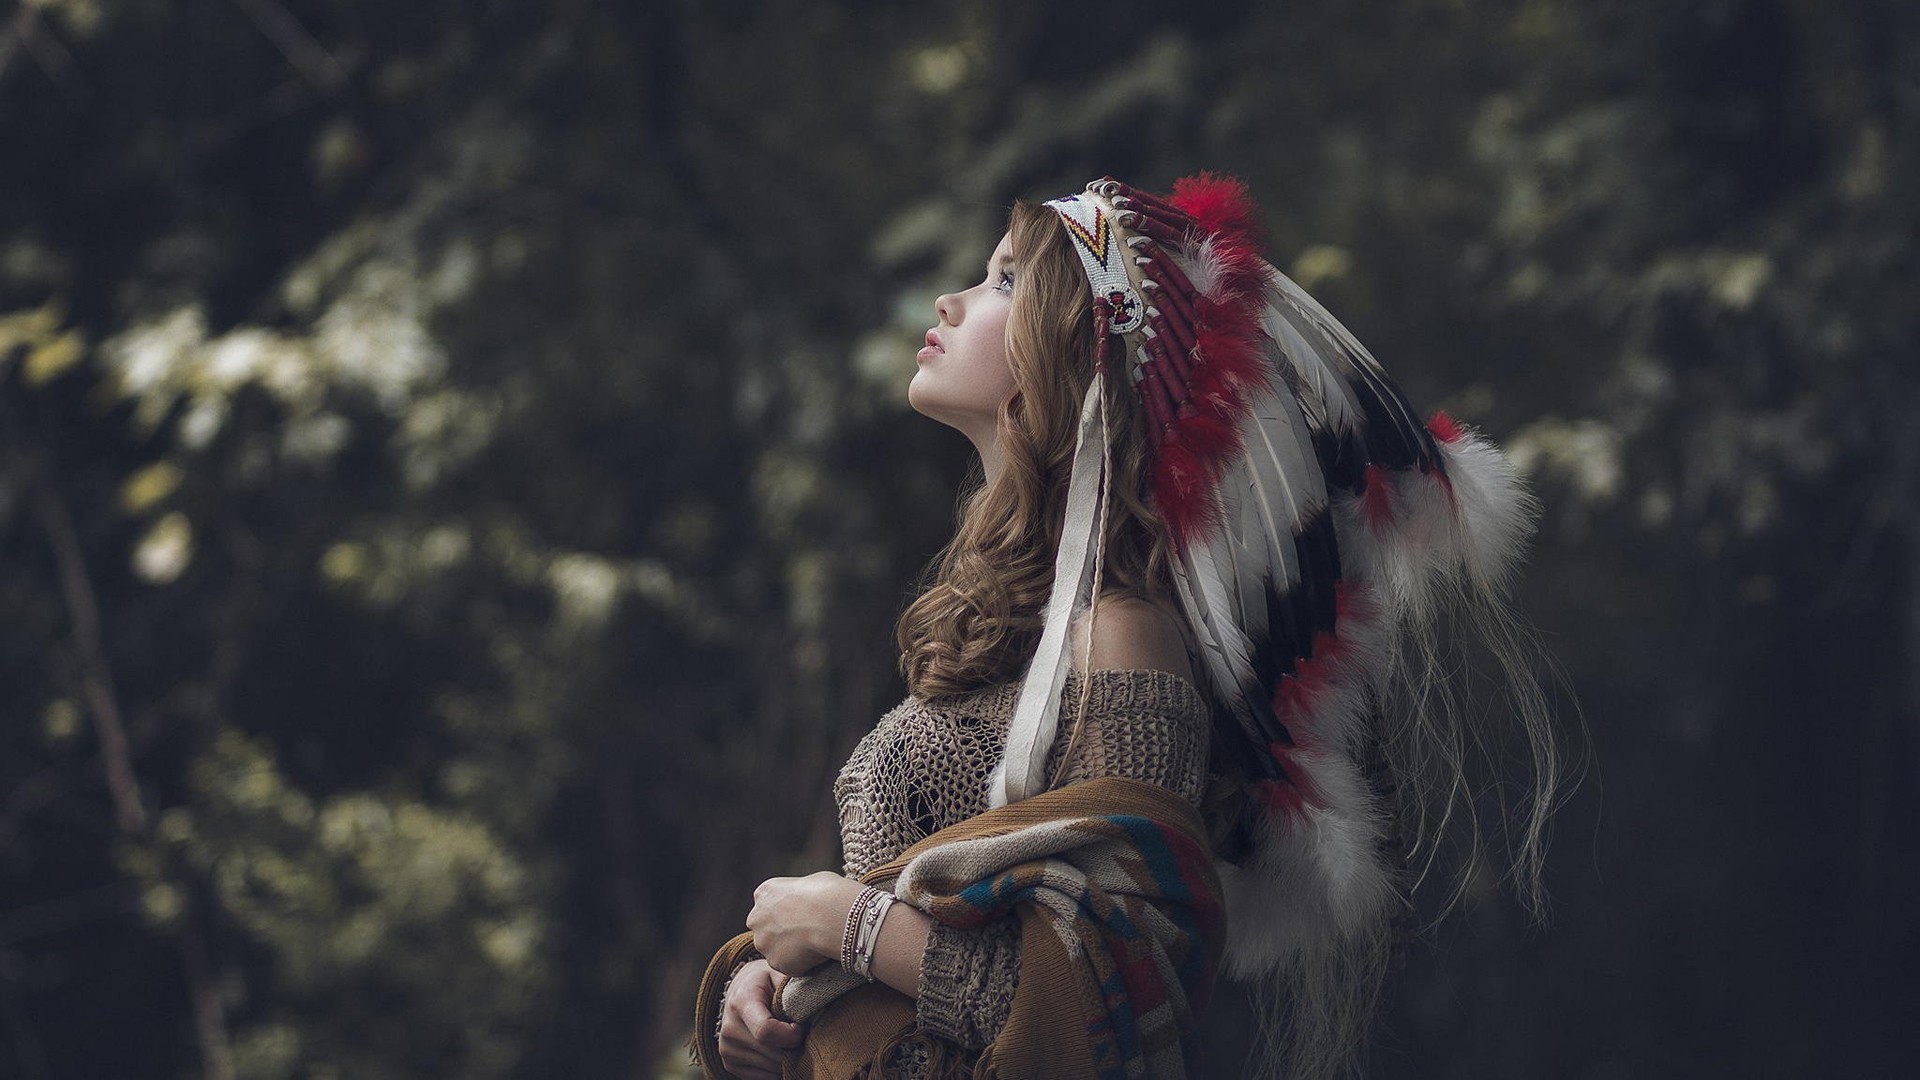 아메리카 원주민의 hd 벽지,아름다움,눈,사진술,cg 삽화,나무